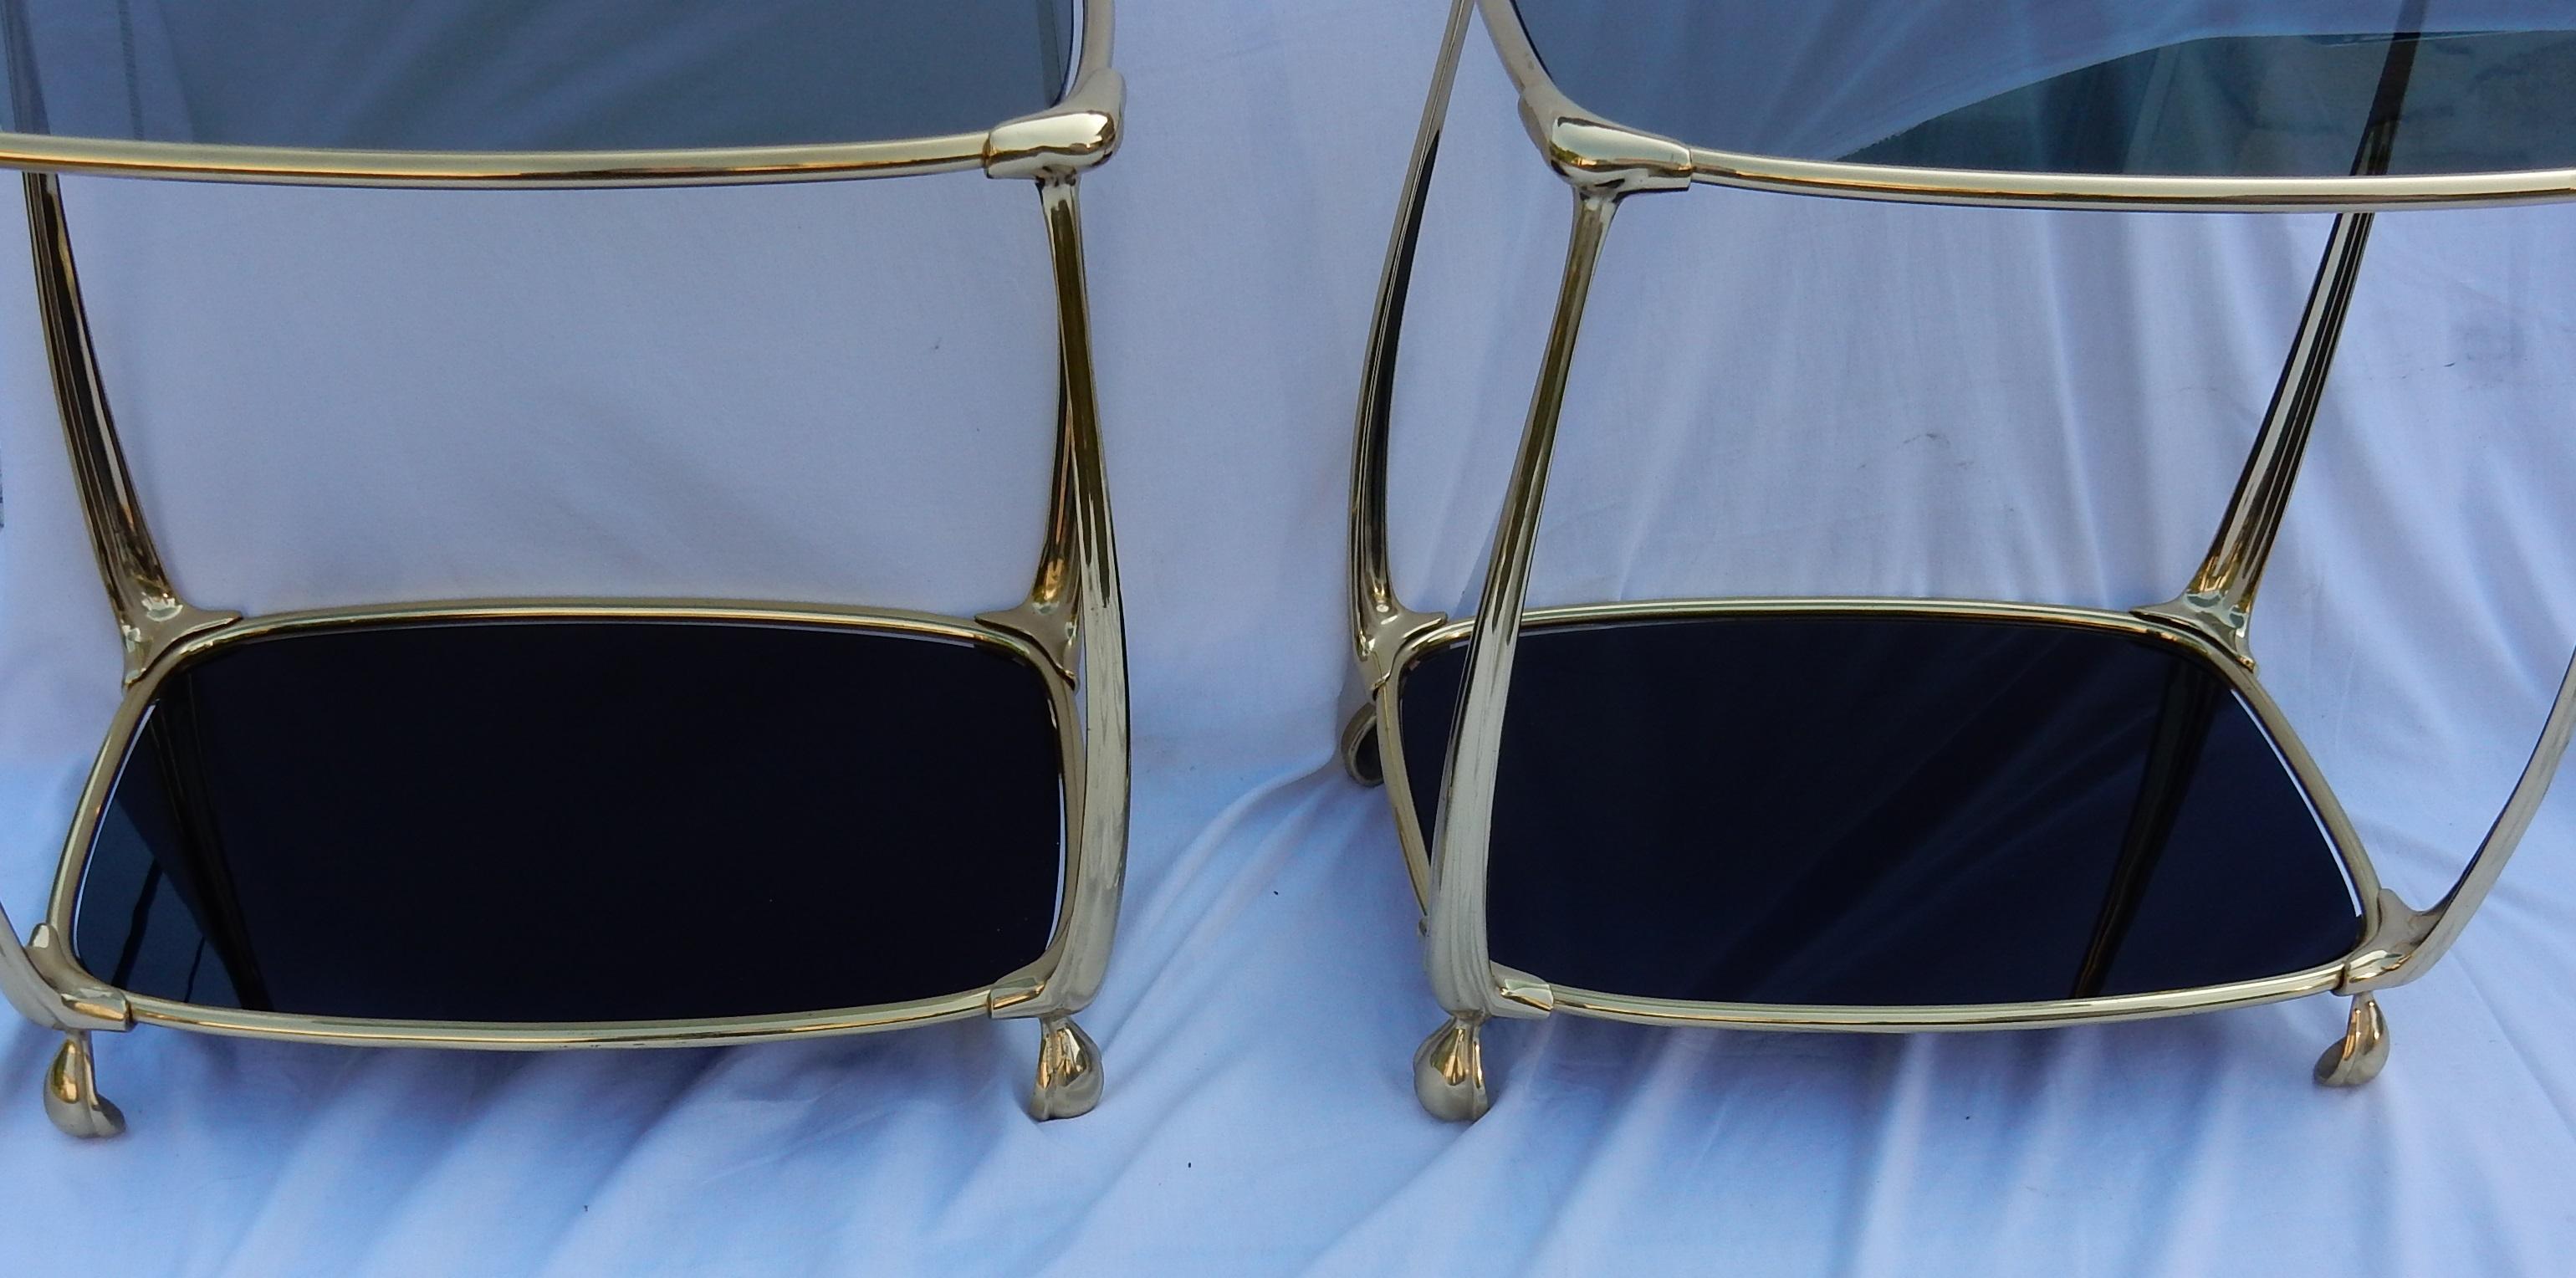 Paire de tables de style Art Nouveau en bronze doré, plateaux en verre fumé et opaline noire, base évasée, circa 1970-1980, tout est vissé et renforts sur les angles. Bon état.

      